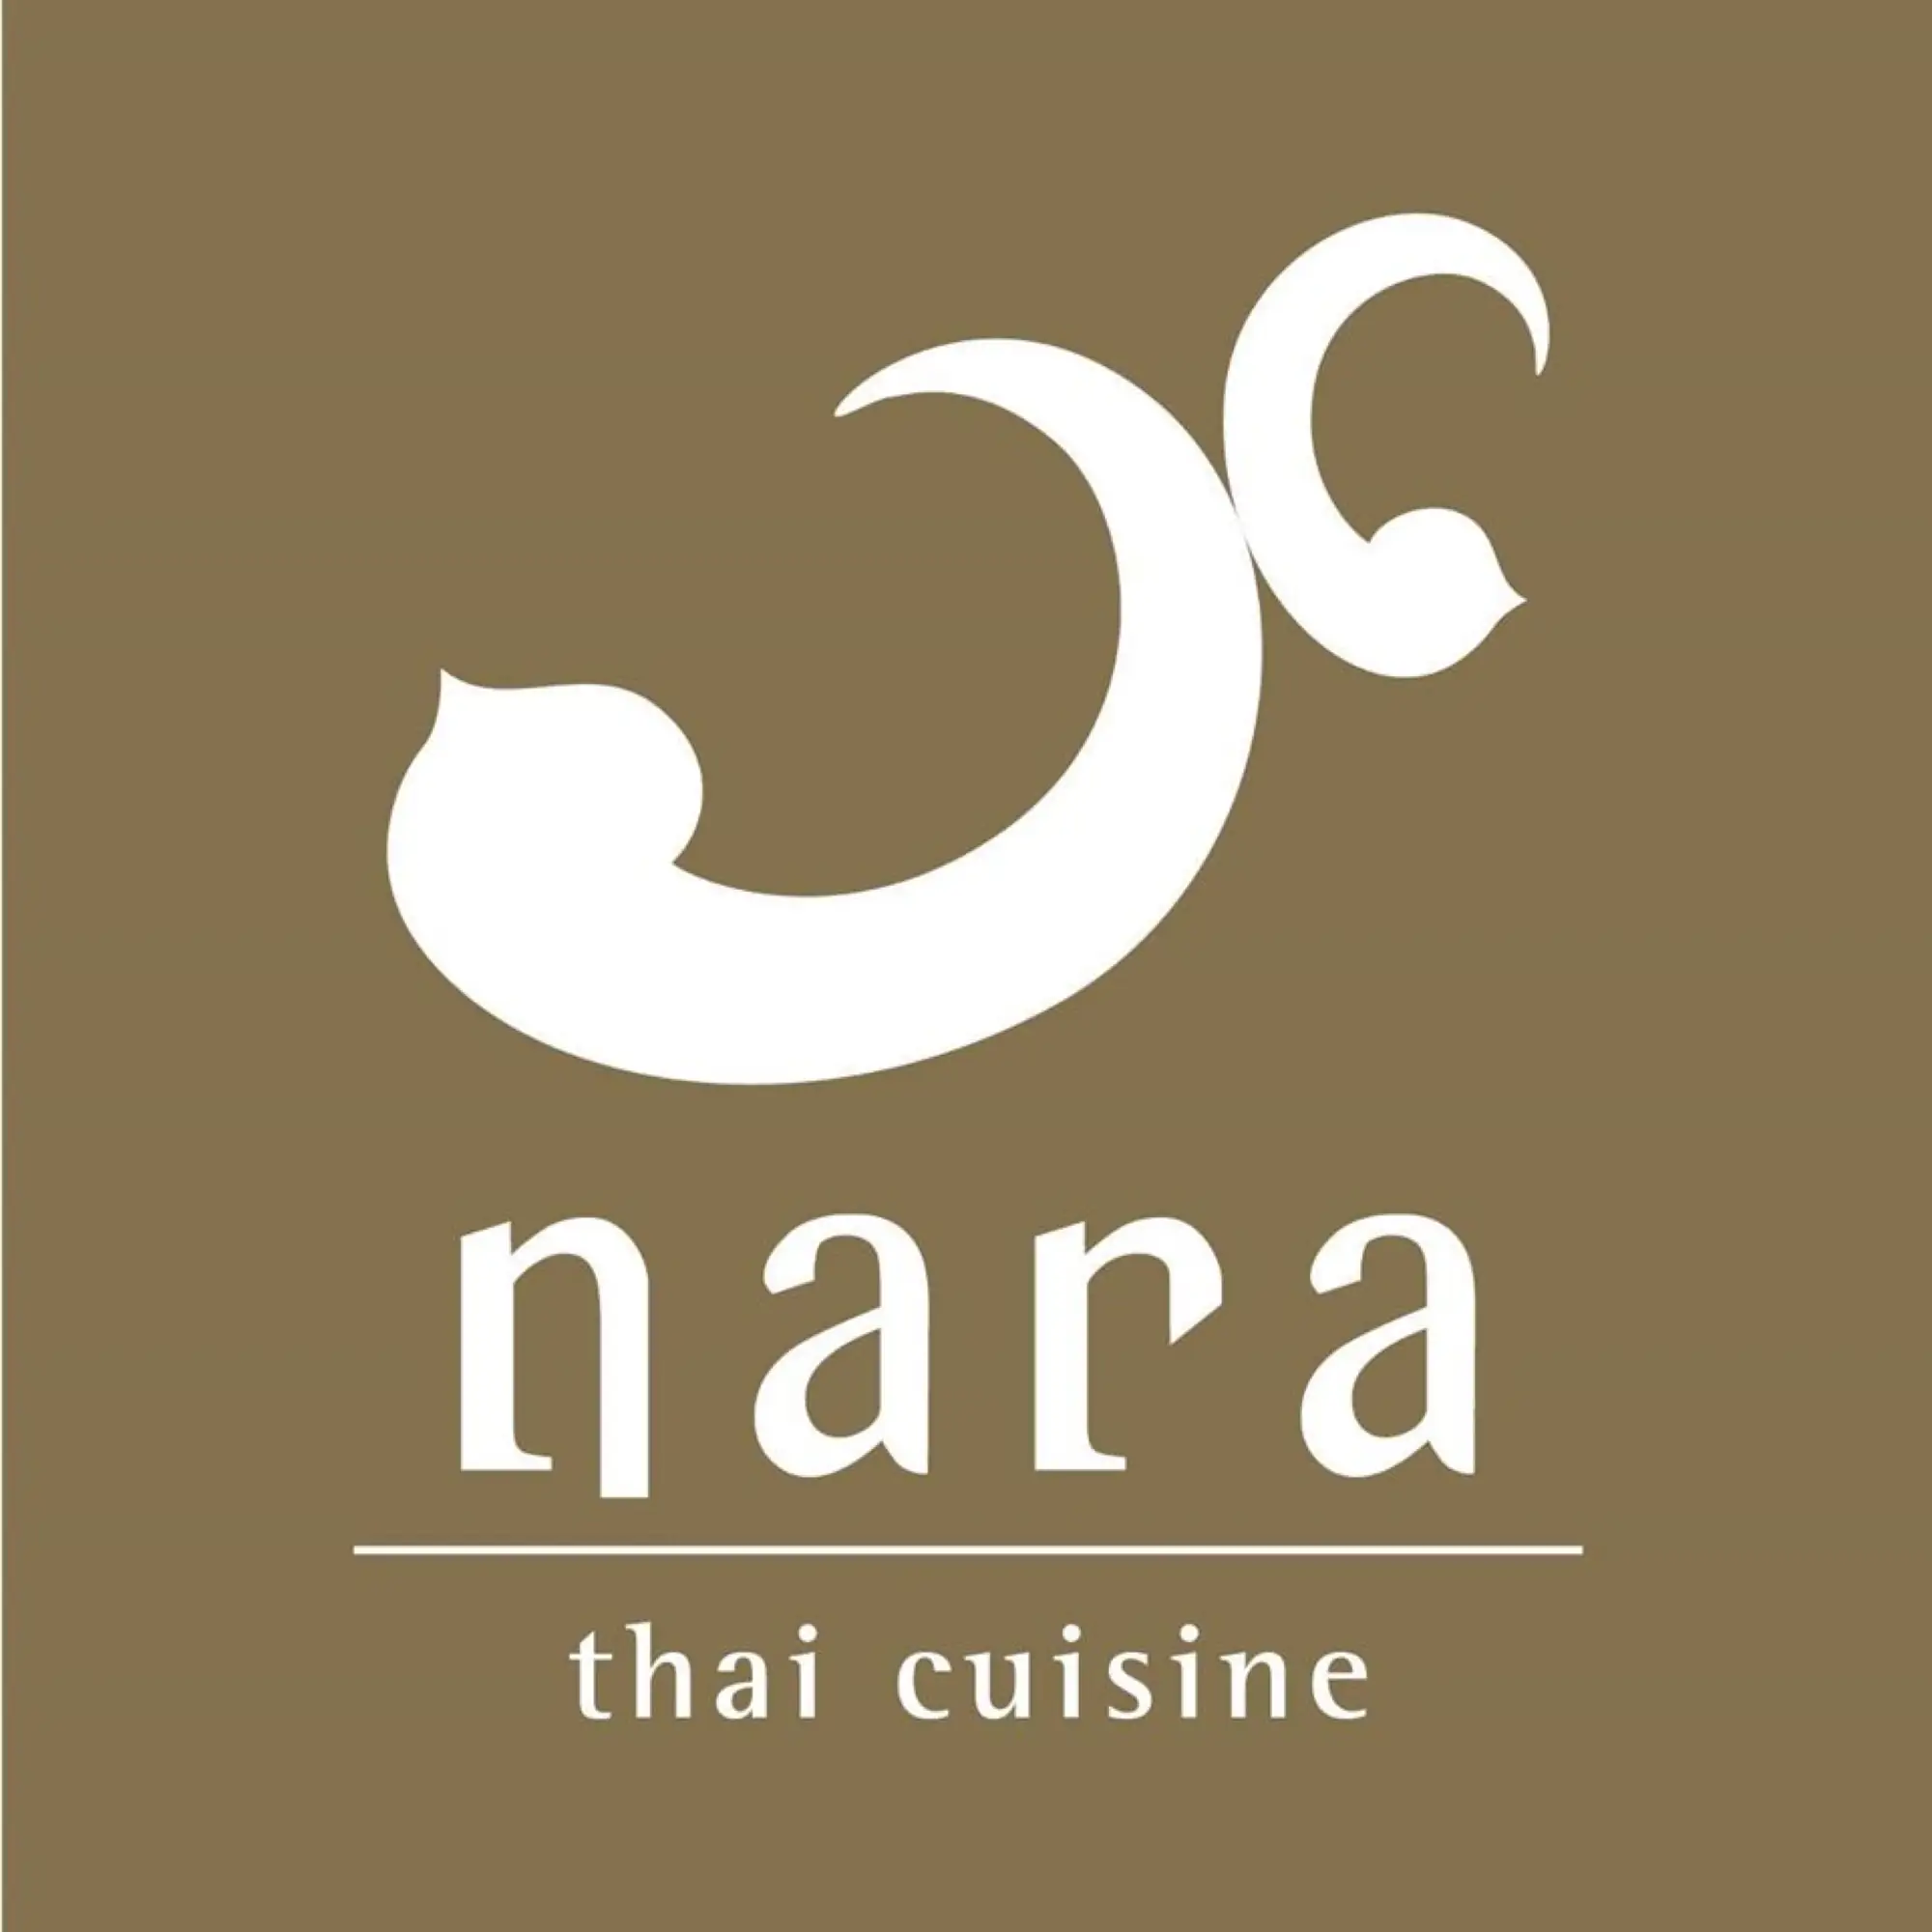 泰菜Nara以早期泰國婦女配戴的相連雙鐲作為商標